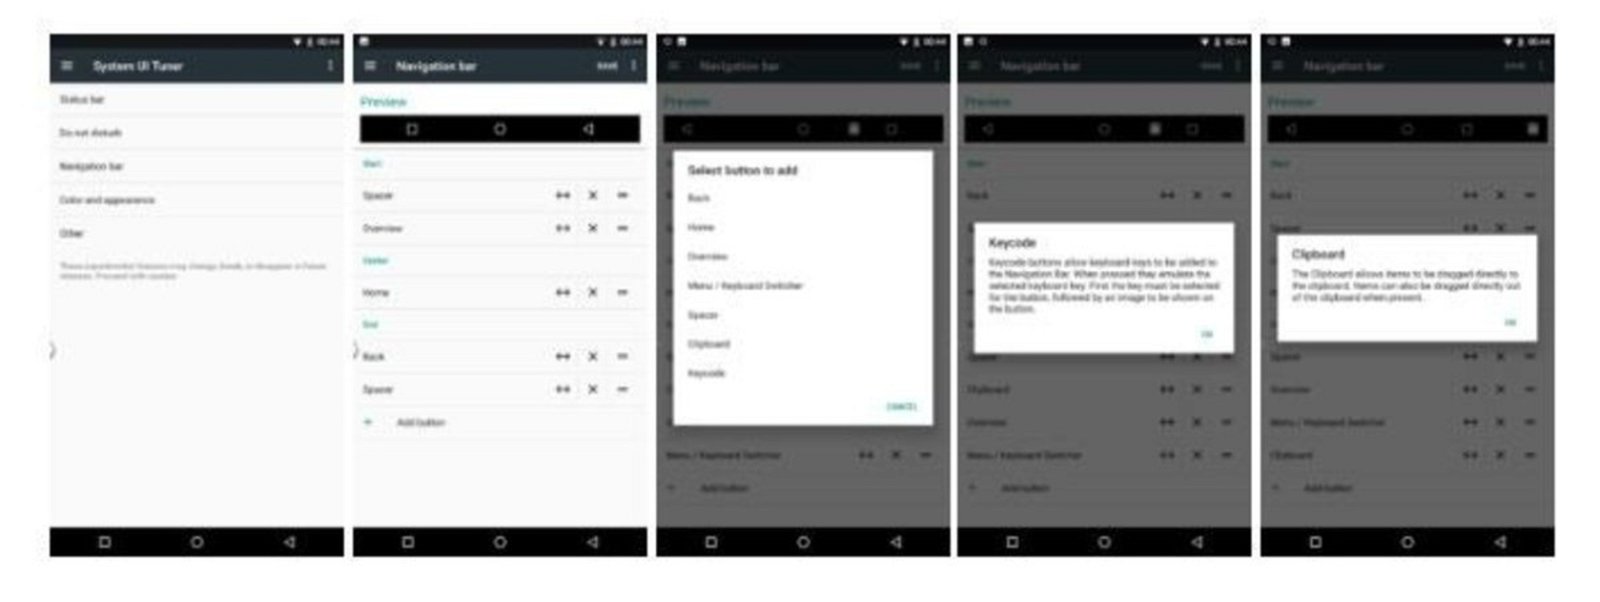 Personalizar barra de navegador Android 7.0 Nougat-2